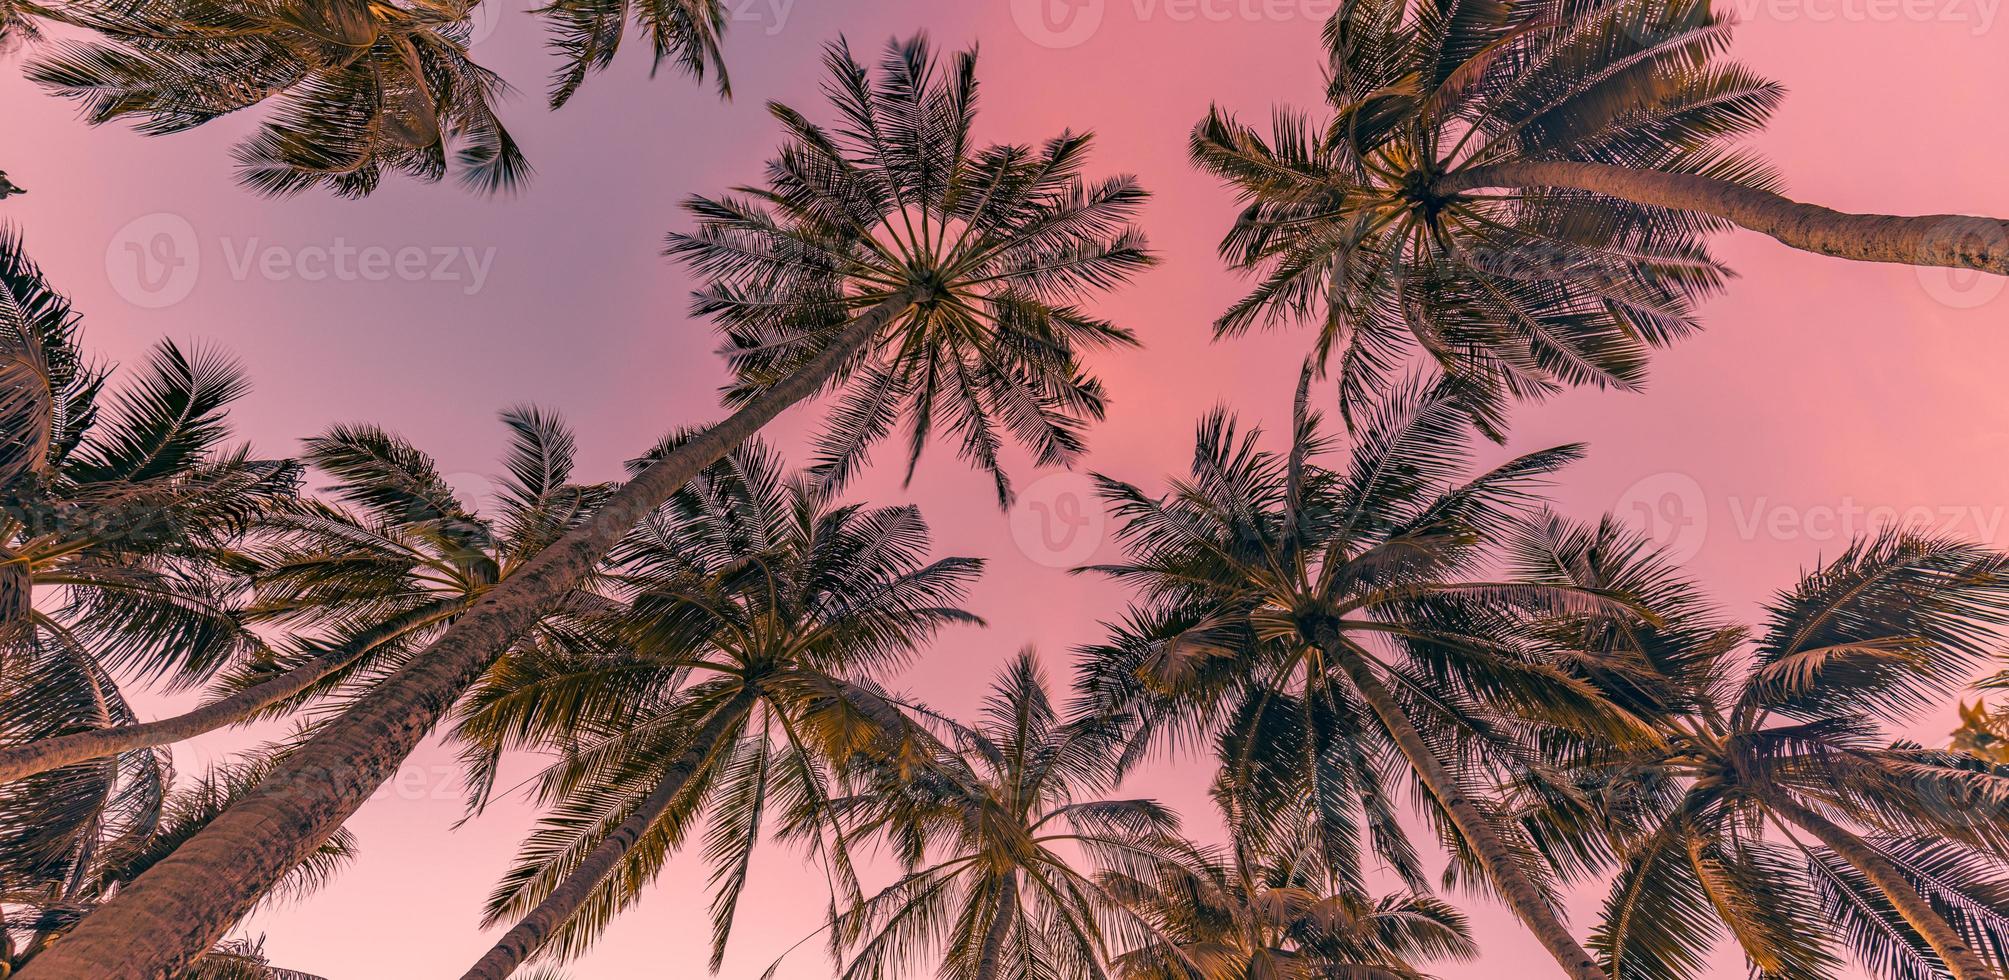 romantische stimmung tropischer palmen mit sonnenlicht auf himmelshintergrund. exotisches laub des sonnenuntergangs im freien, nahaufnahmenaturlandschaft. Kokospalmen und strahlende Sonne über hellem Himmel. sommer frühling natur foto